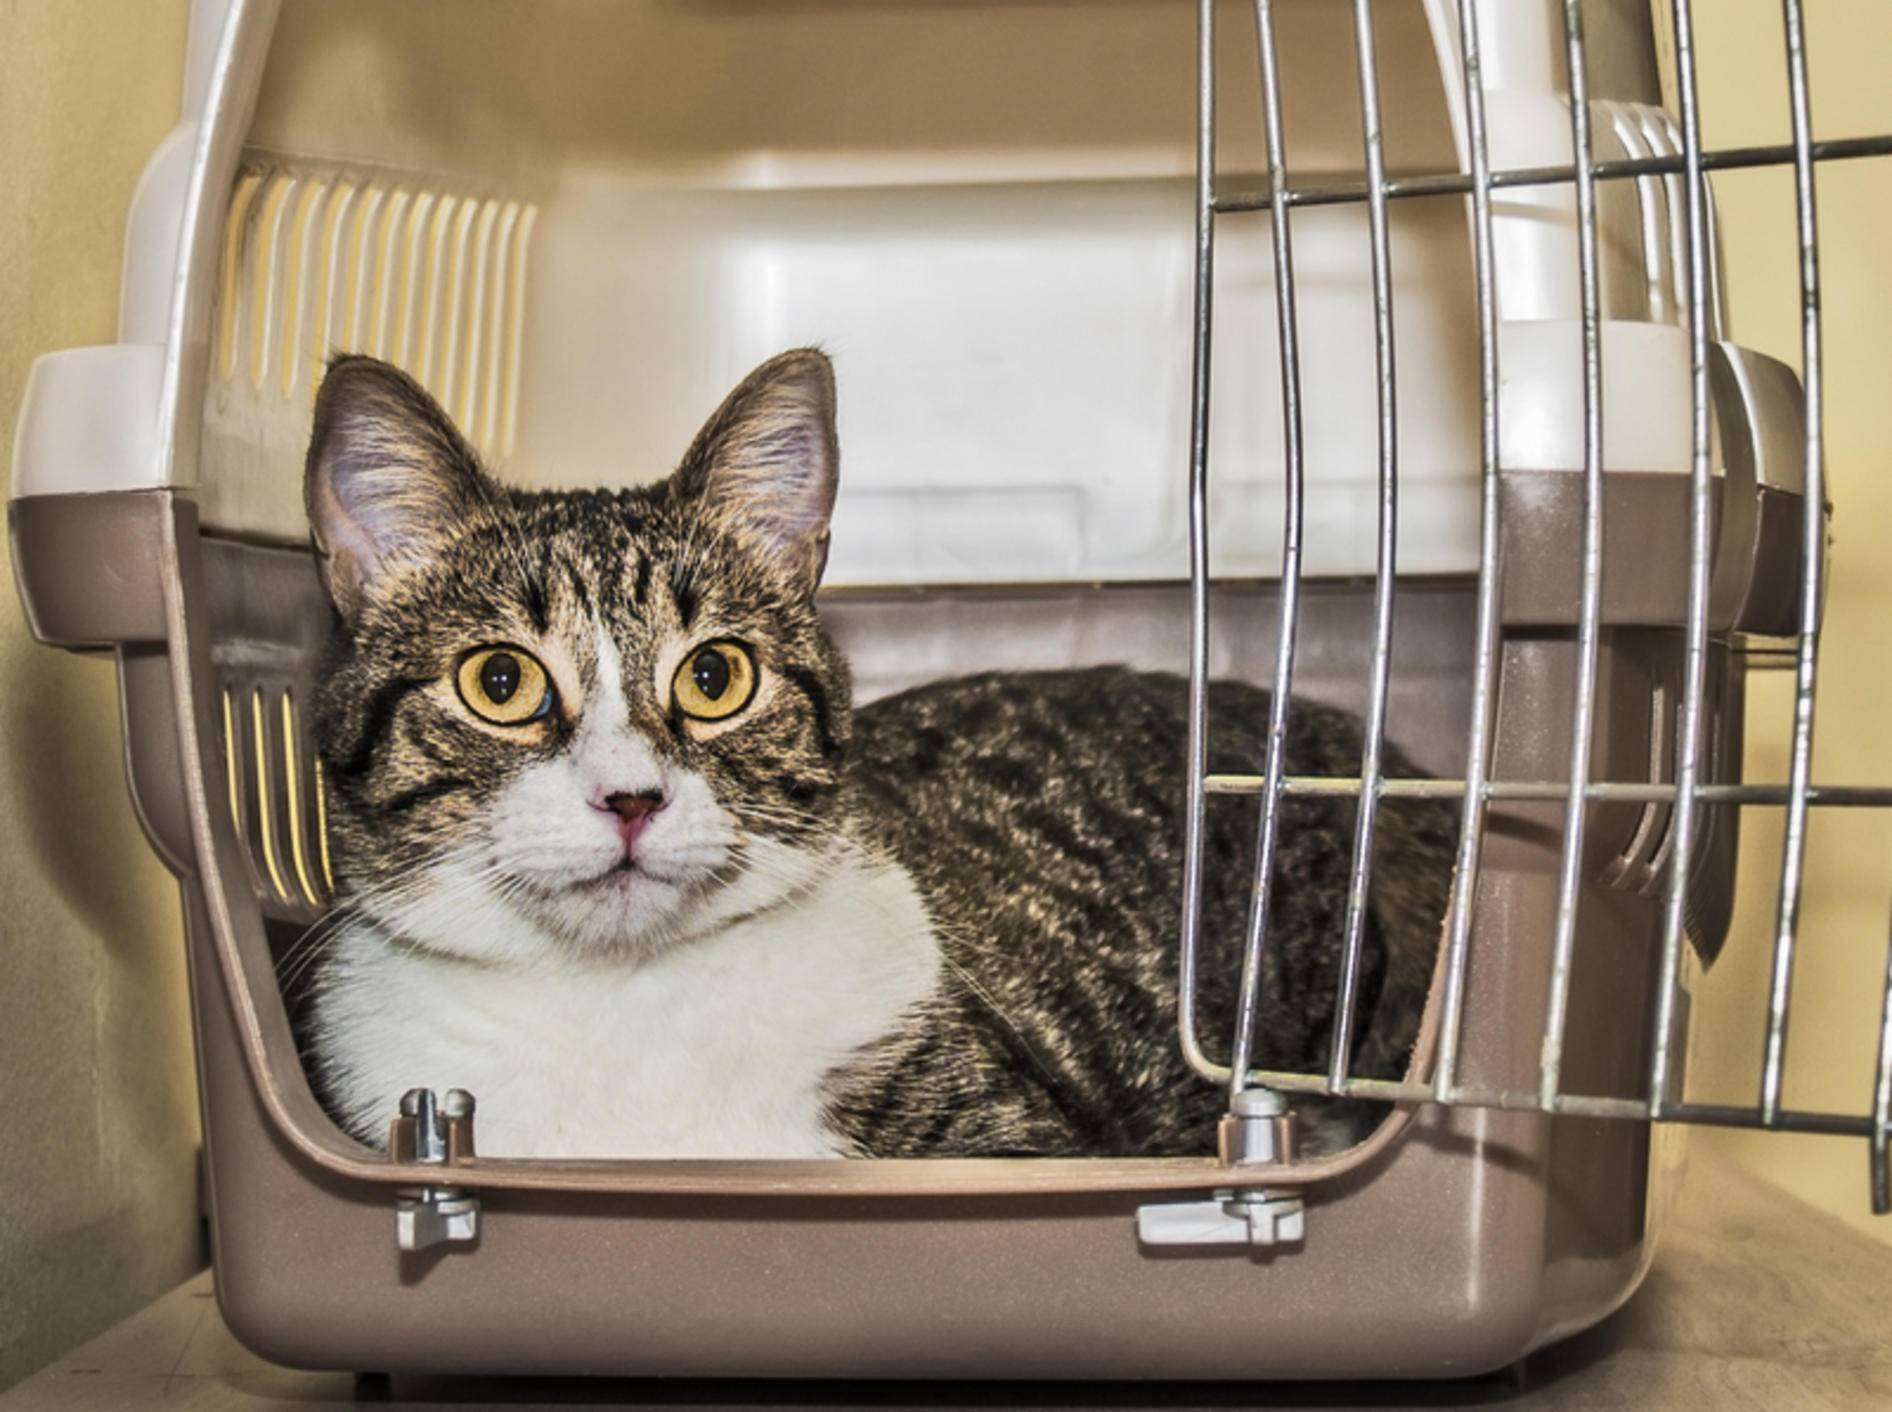 Mit ein paar Tipps bleibt Ihre Katze auf dem Weg zum Tierarzt entspannt – Bild: Shutterstock / FXEGS Javier Espuny